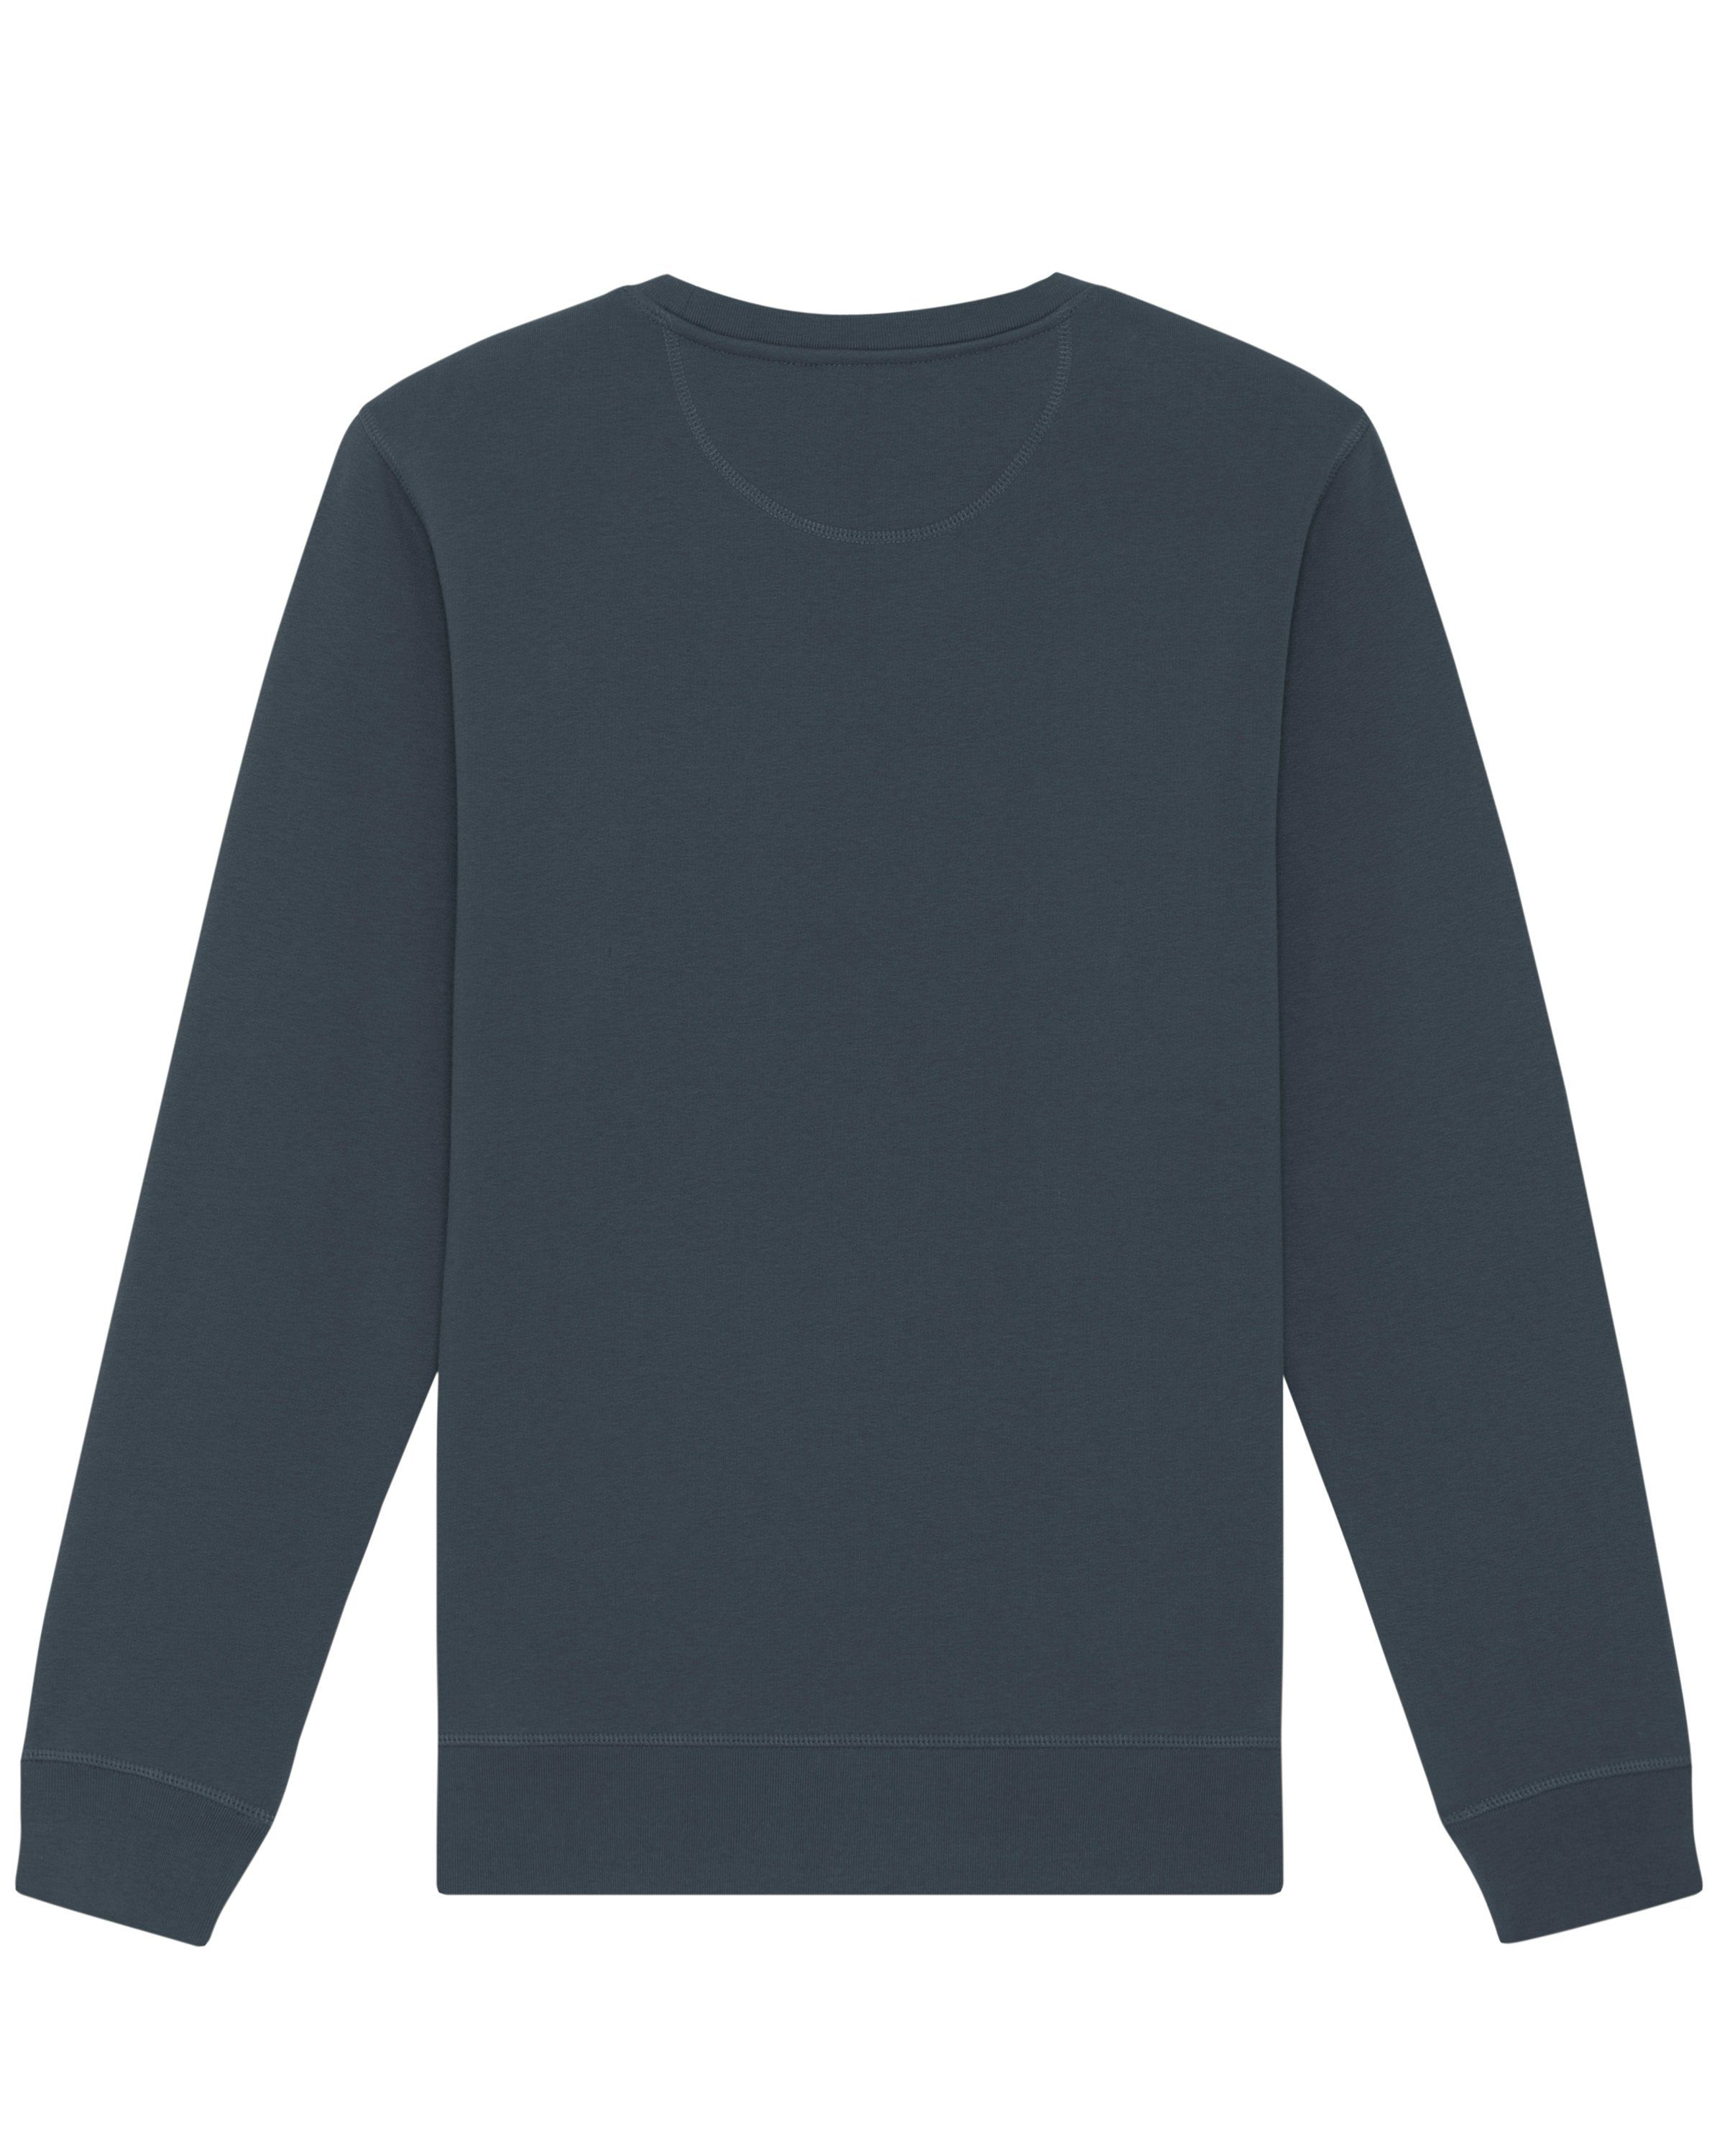 (1-tlg) ist schön graublau Apparel Sweatshirt Natur meliert wat?